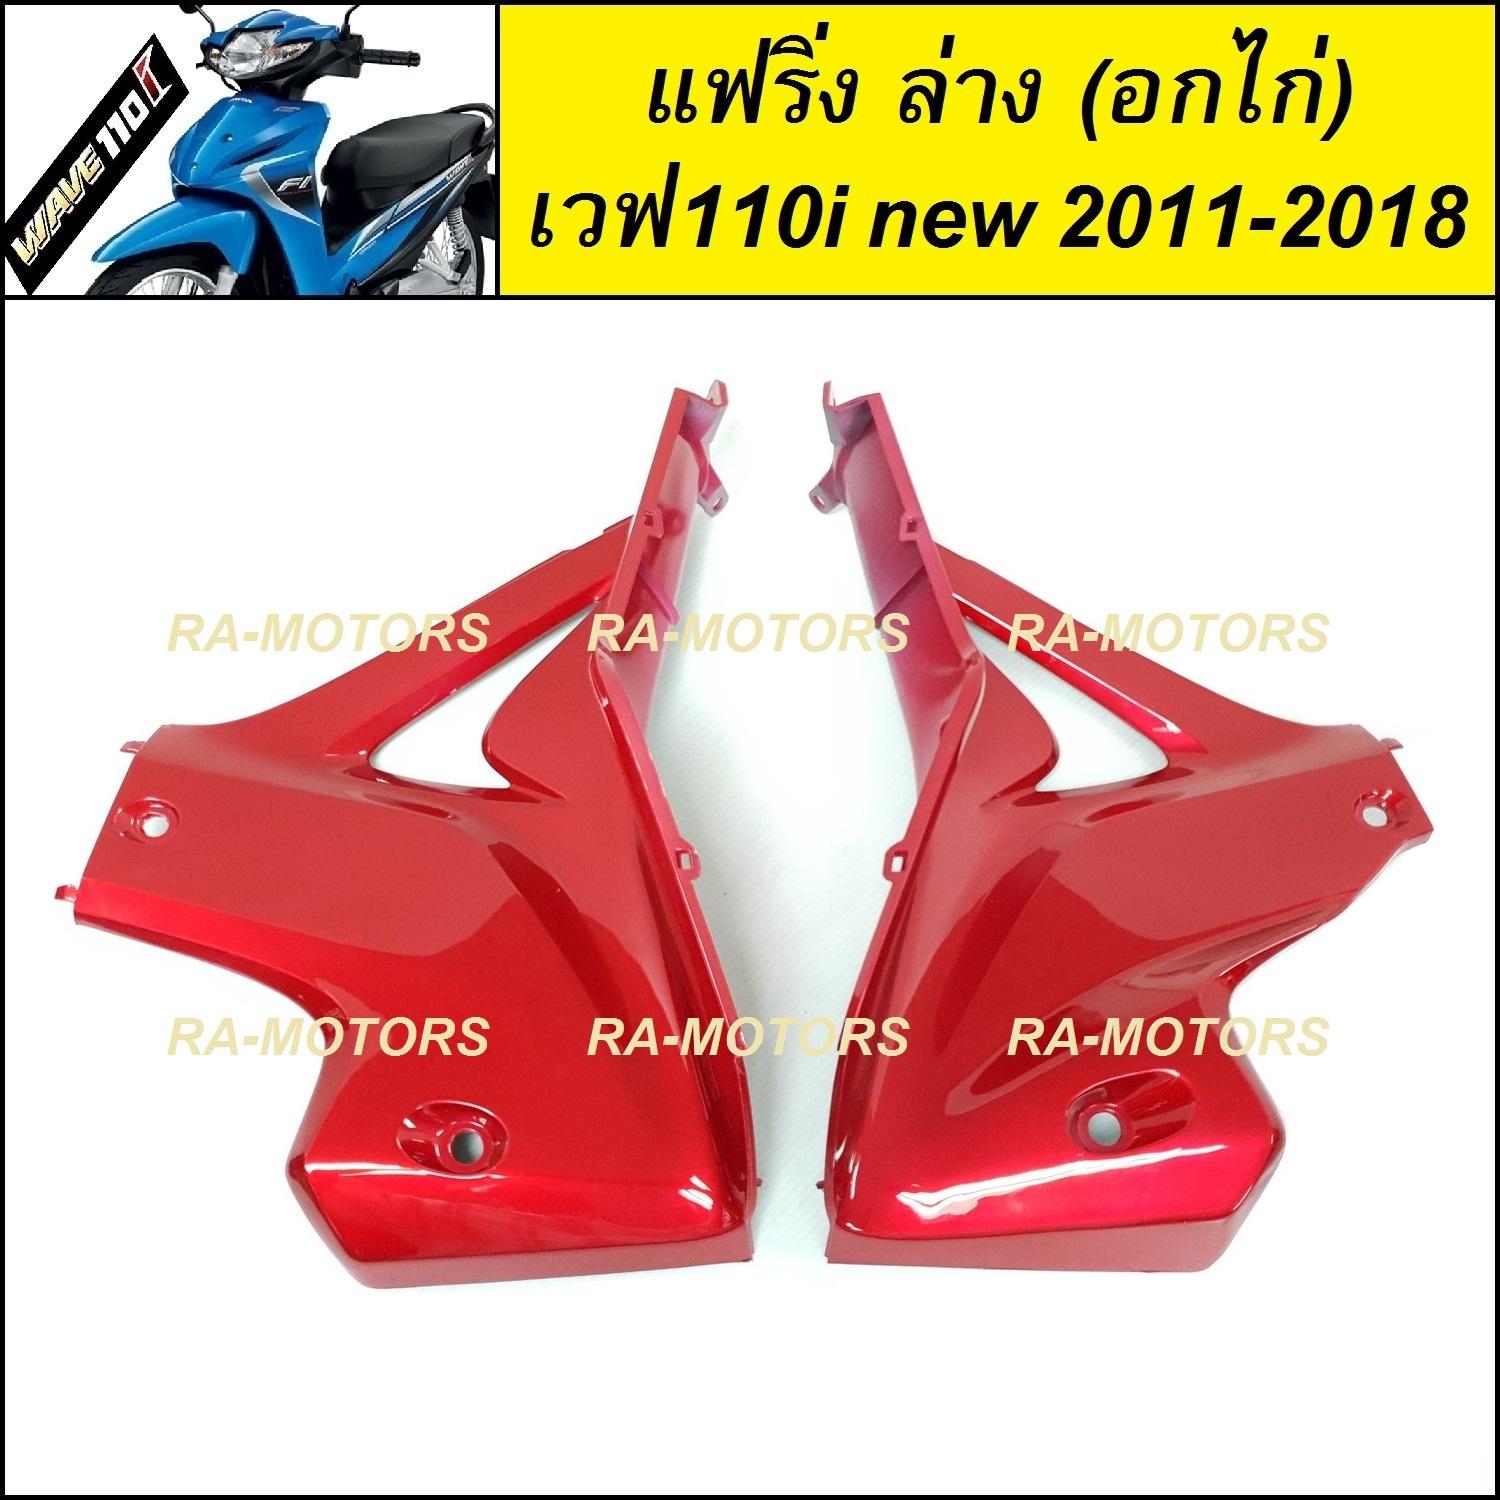 (D) ARM อกไก่ แฟริ่ง ล่าง ชิ้นใหญ่ สีแดงบรอนซ์ 340 สำหรับ เวฟ110i new (ปี 2011-2018) (อกไก่ w110i new แดงแก้ว 340)